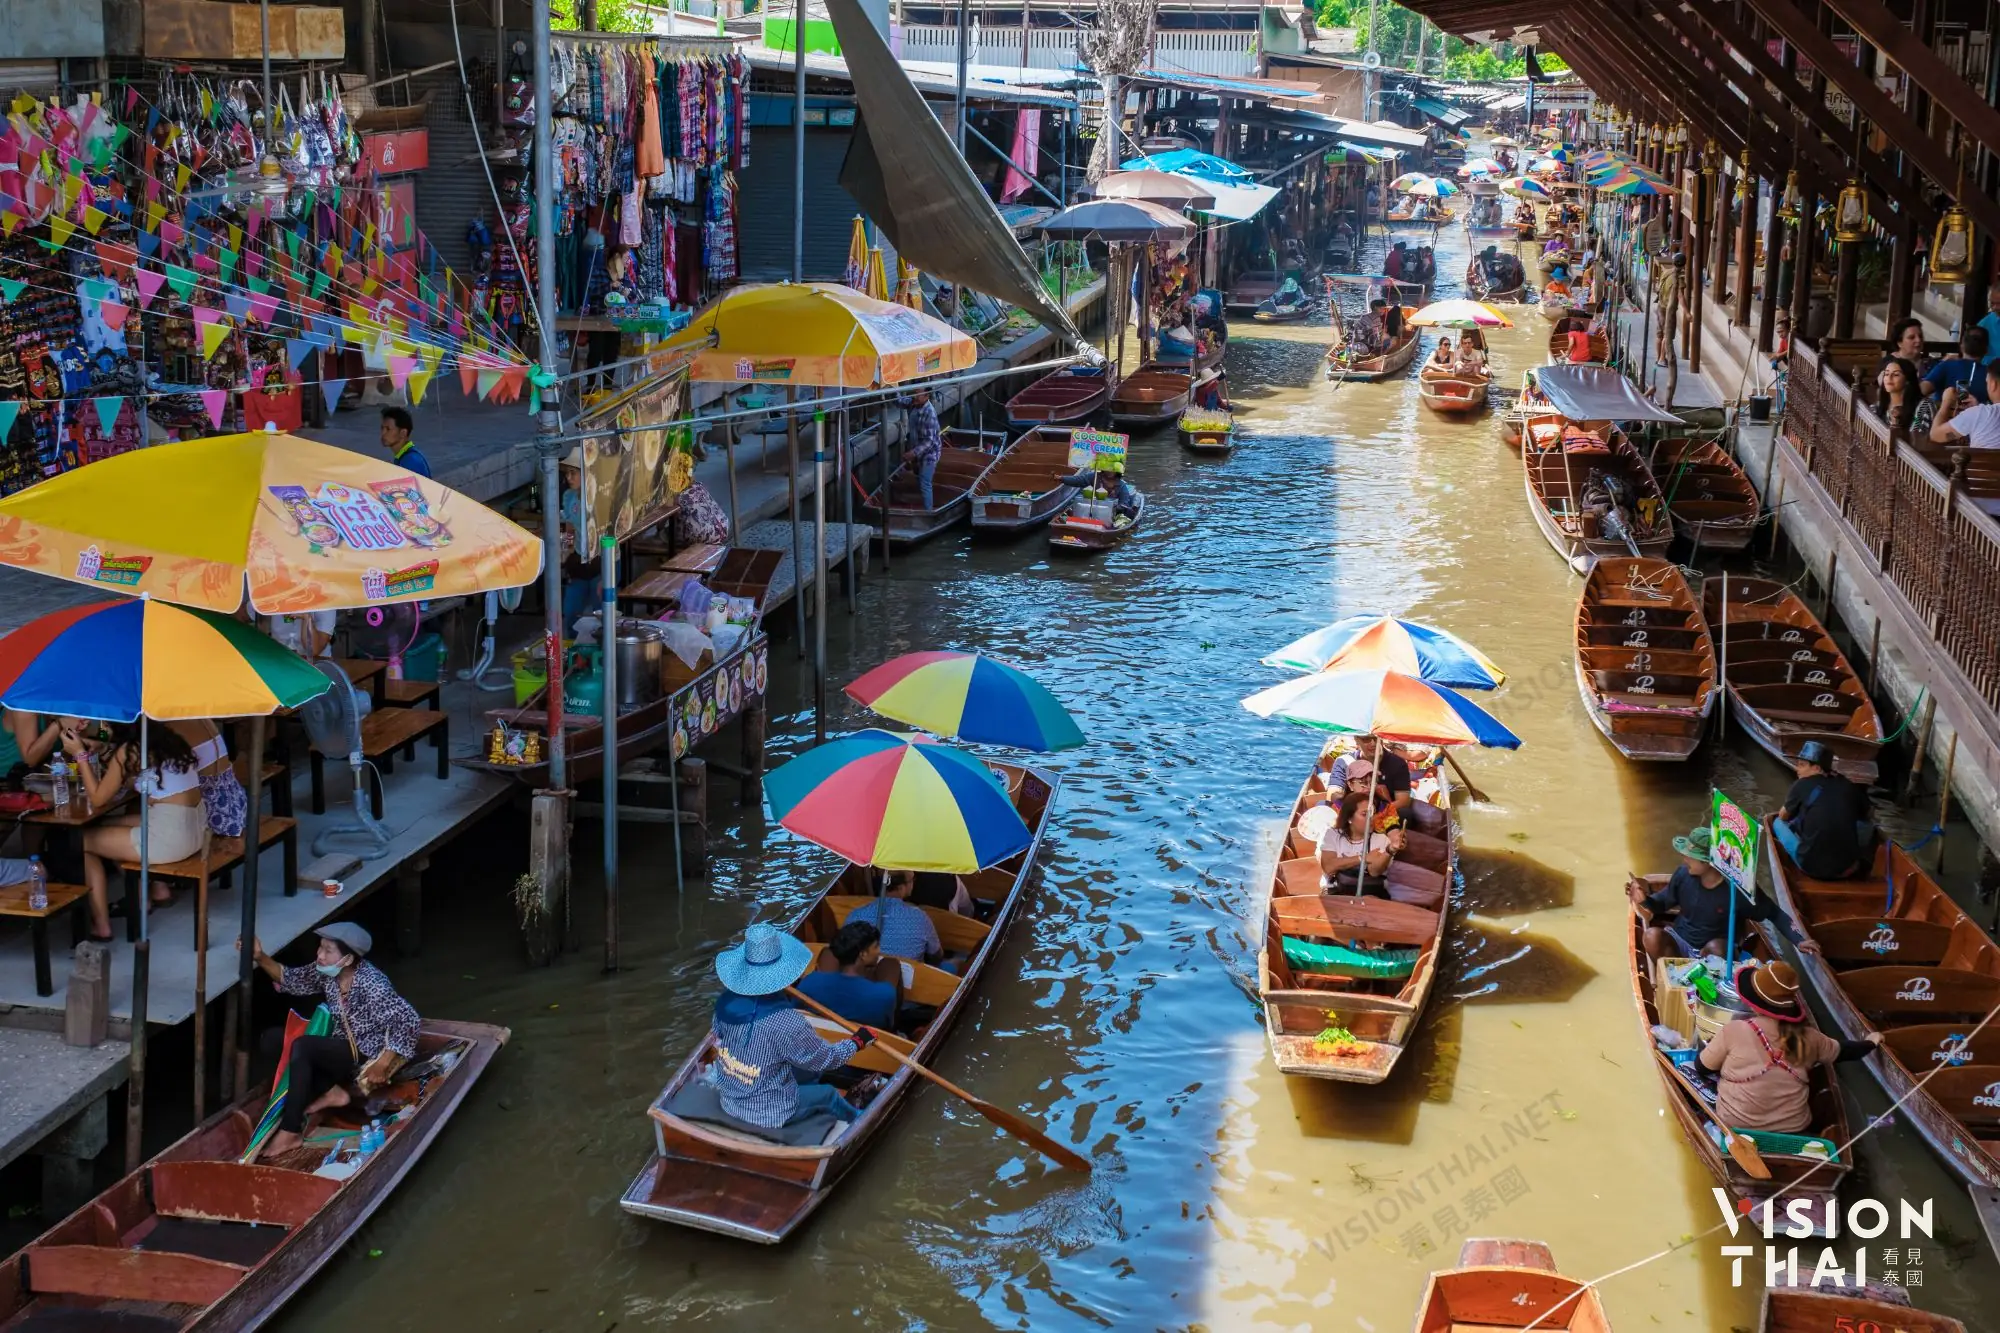 丹能莎朵水上市场已超过百年历史，且是最知名、规模最大的水上市场，电影007曾到此取景（图片来源：Vision Thai 看见泰国）